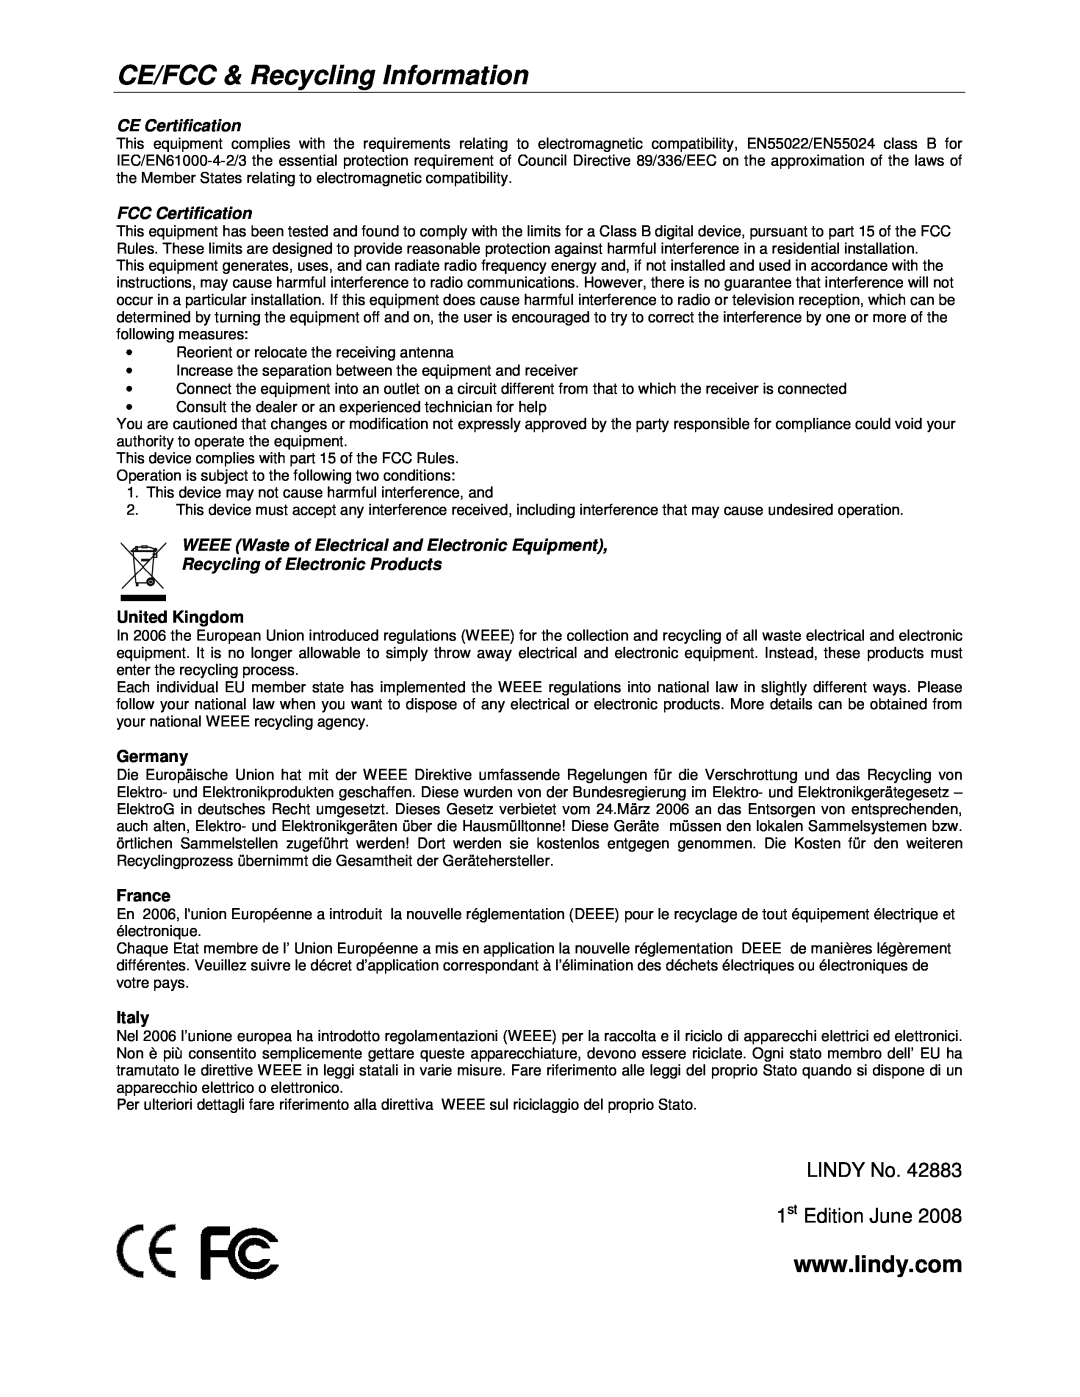 Lindy 42883 CE/FCC & Recycling Information, CE Certification, FCC Certification, Recycling of Electronic Products, Germany 